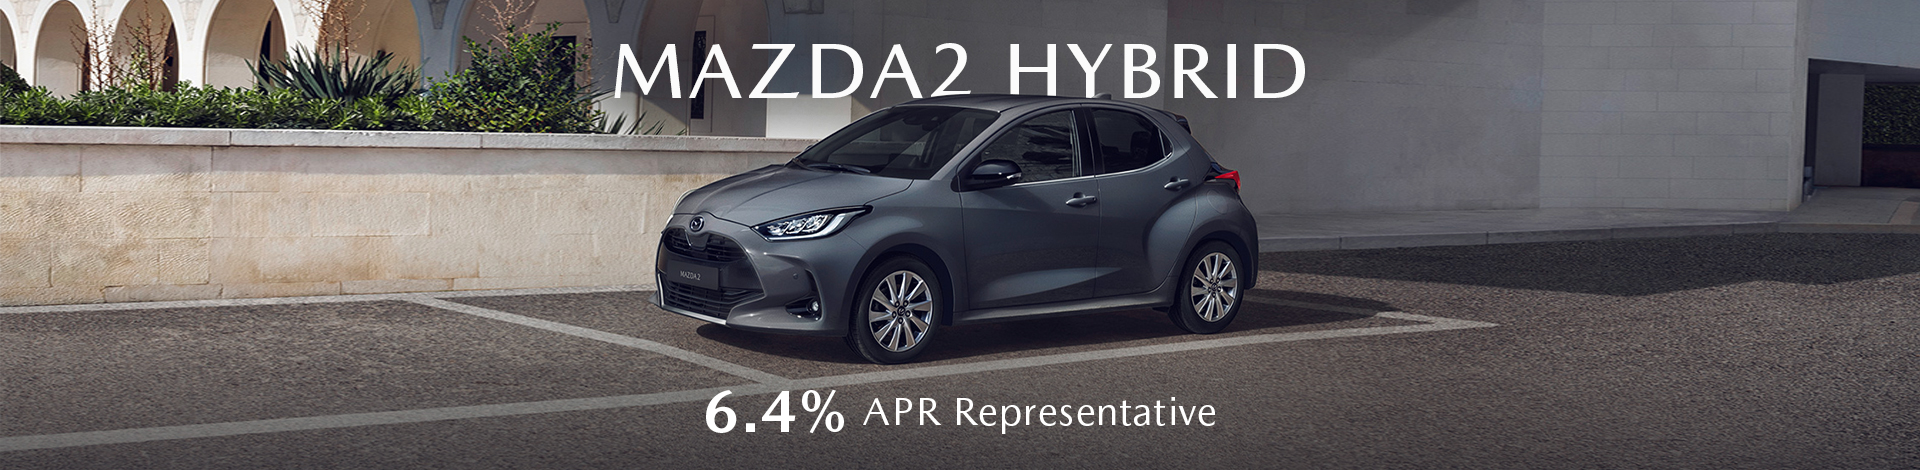 /Mazda Mazda2 Hybrid Banner Apr 22